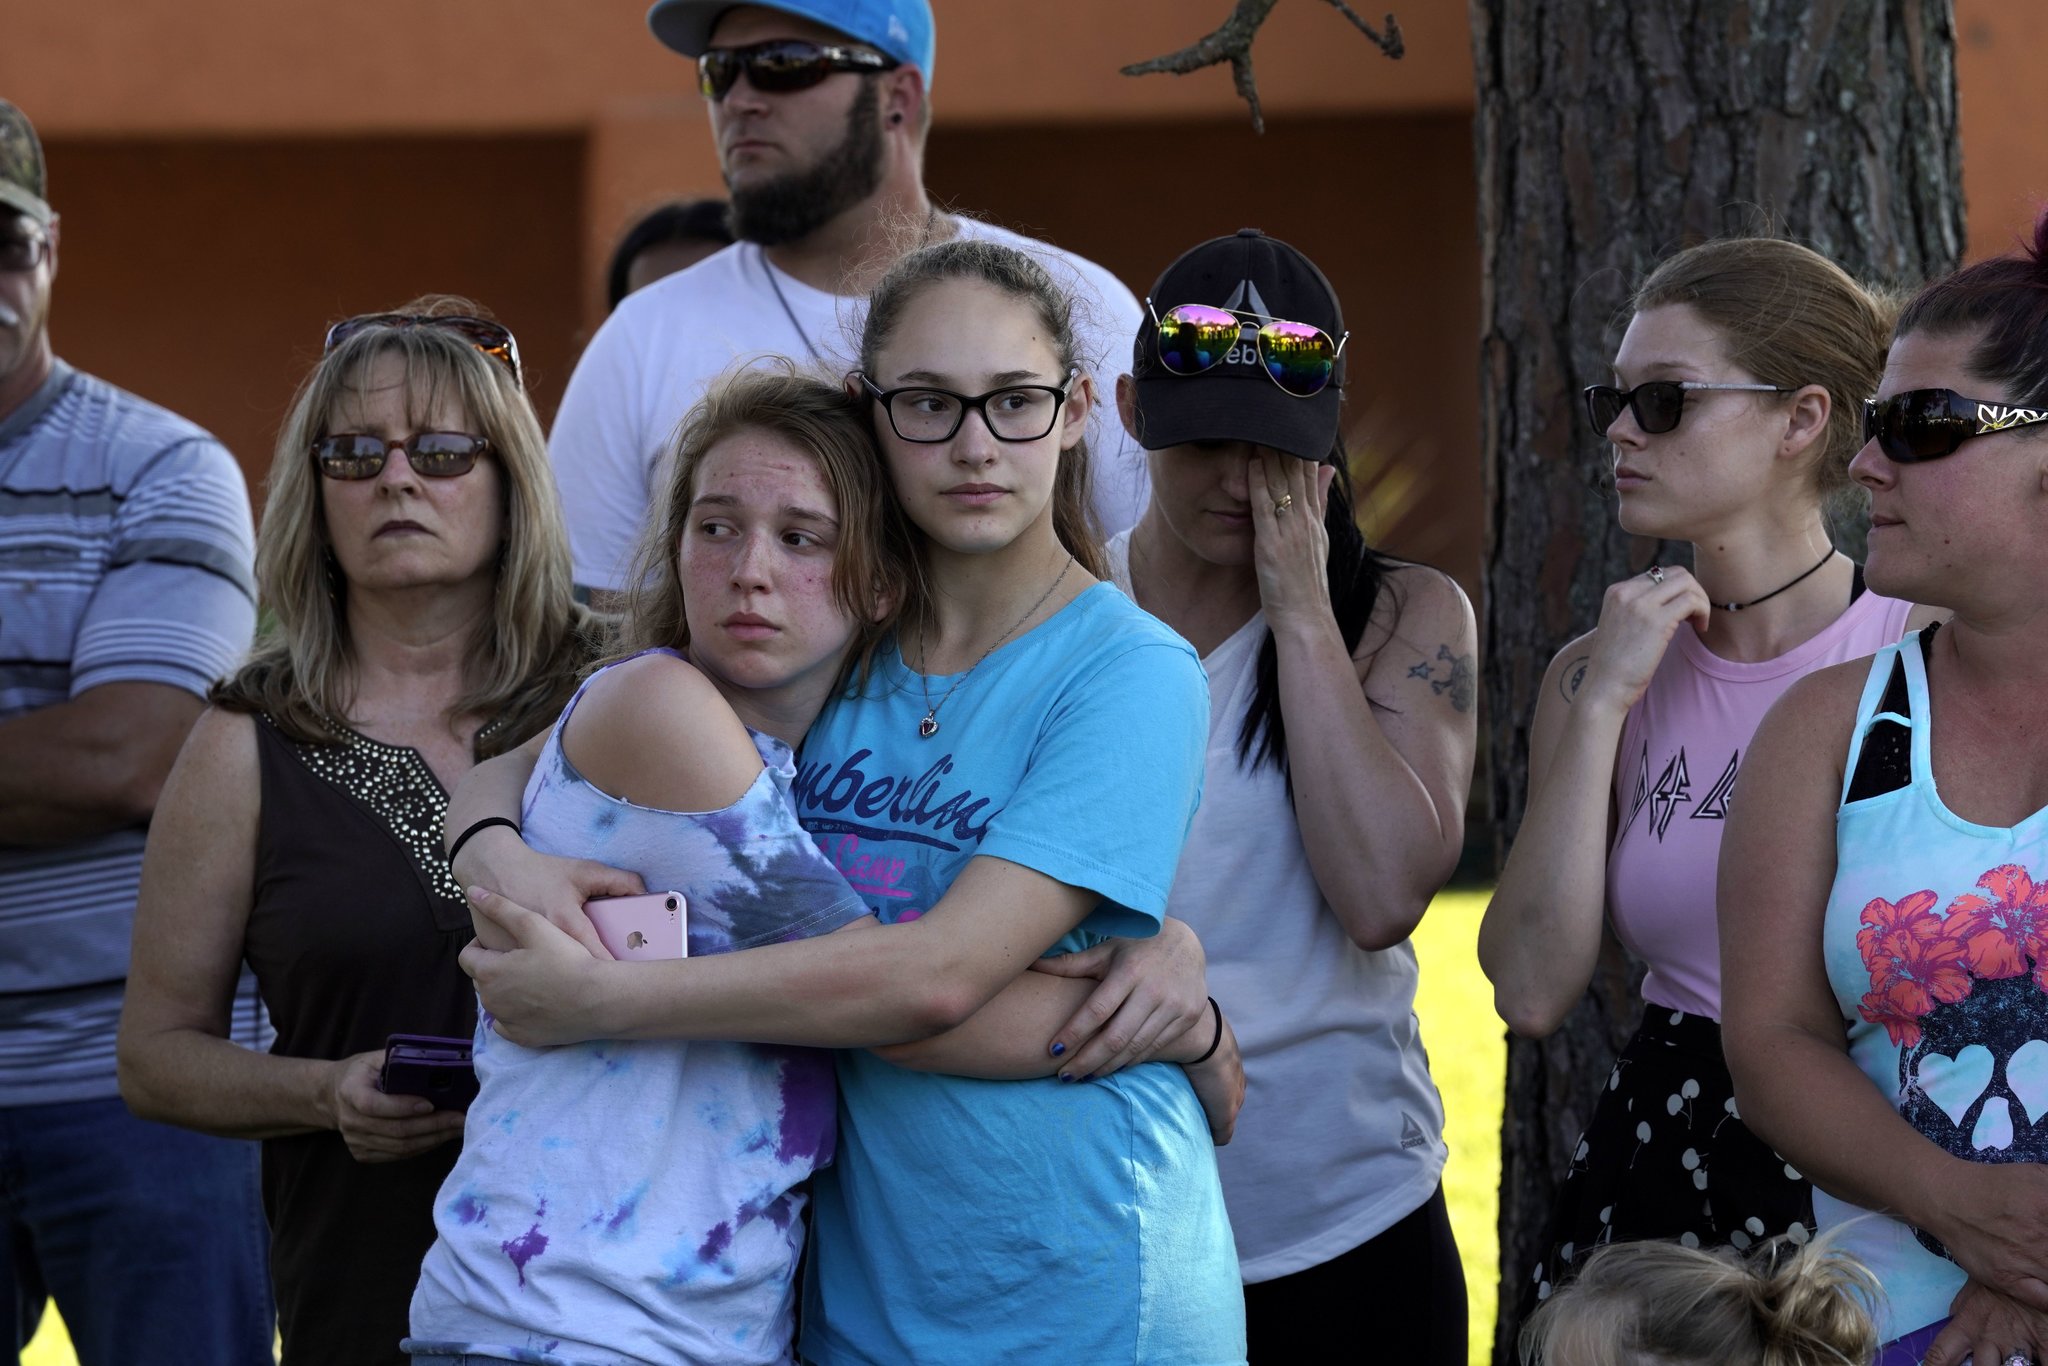 Strage scuola Texas: in un video il killer entra nell'edificio e apre il fuoco, si aggiorna il totale delle vittime che sale a 19 bambini